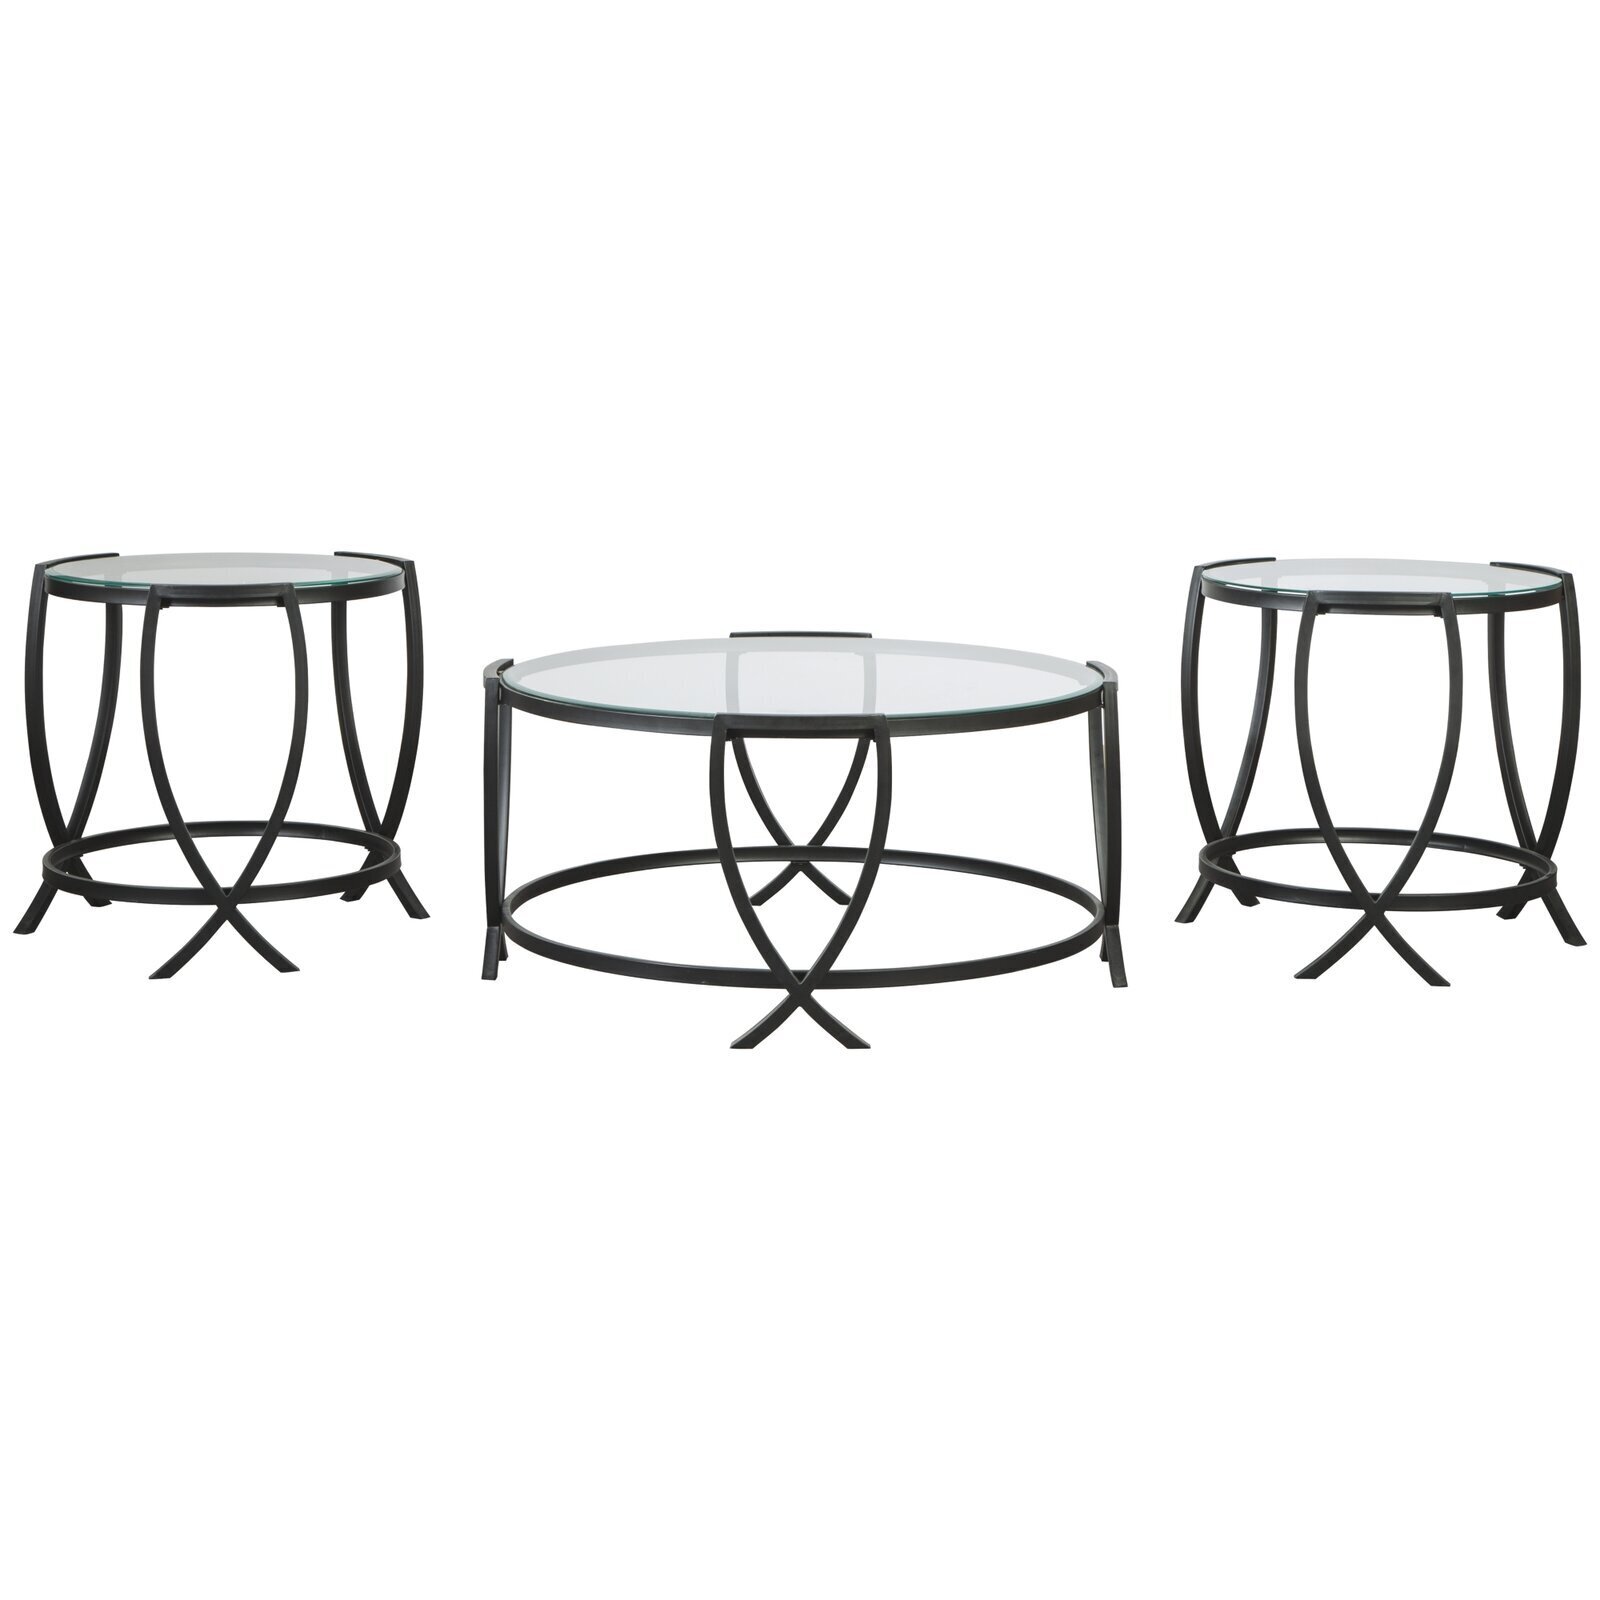 Wrought iron round coffee table set